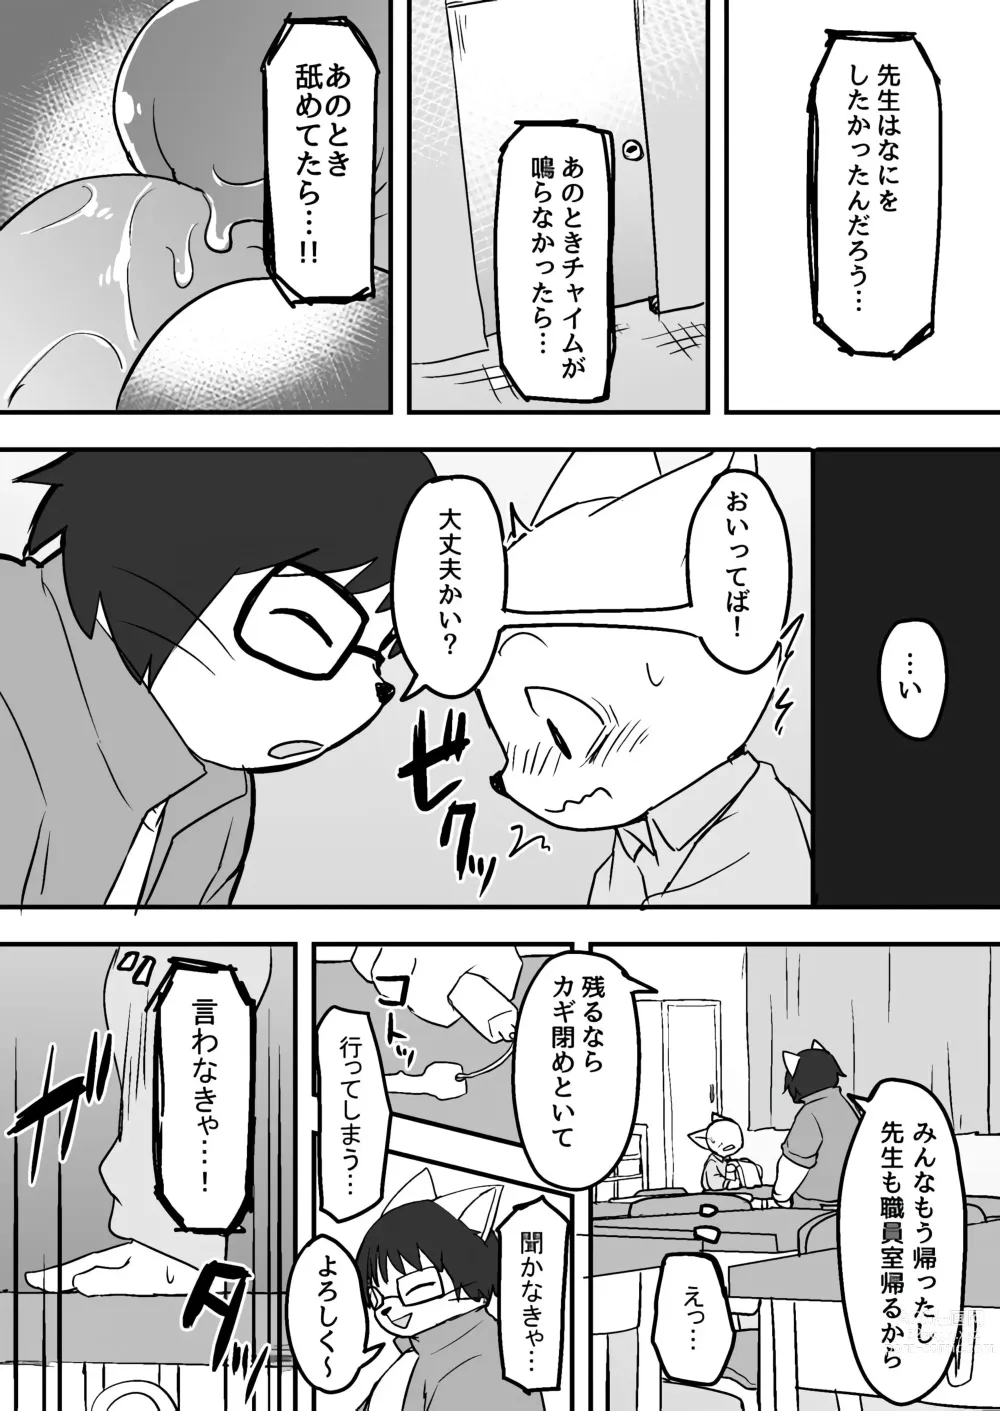 Page 10 of doujinshi Manmosu Marimo - Sensei Story #1